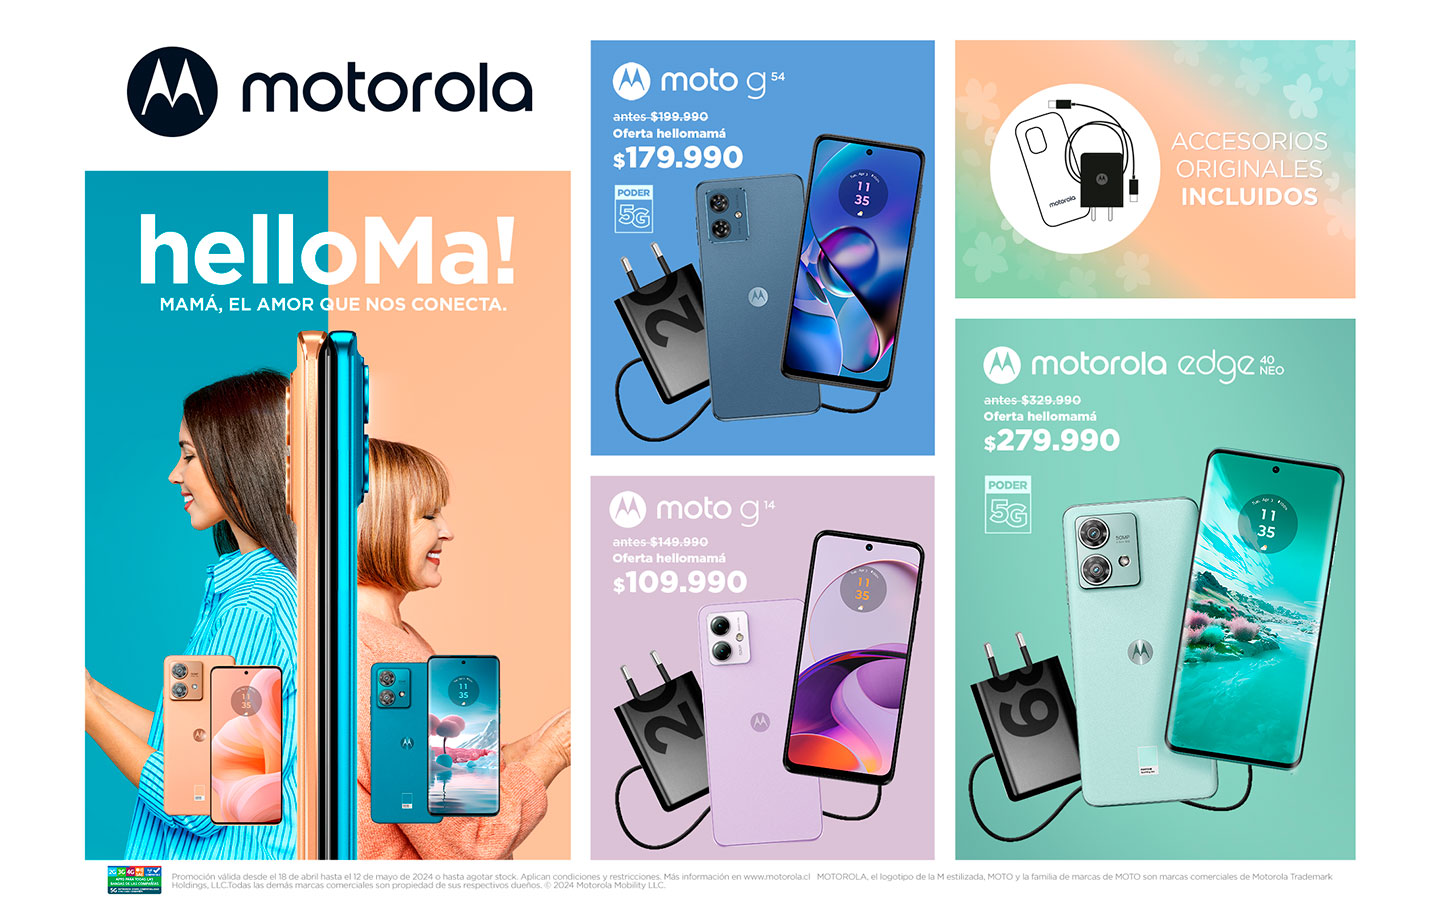 HelloMamá: Motorola continúa con las mejores rebajas